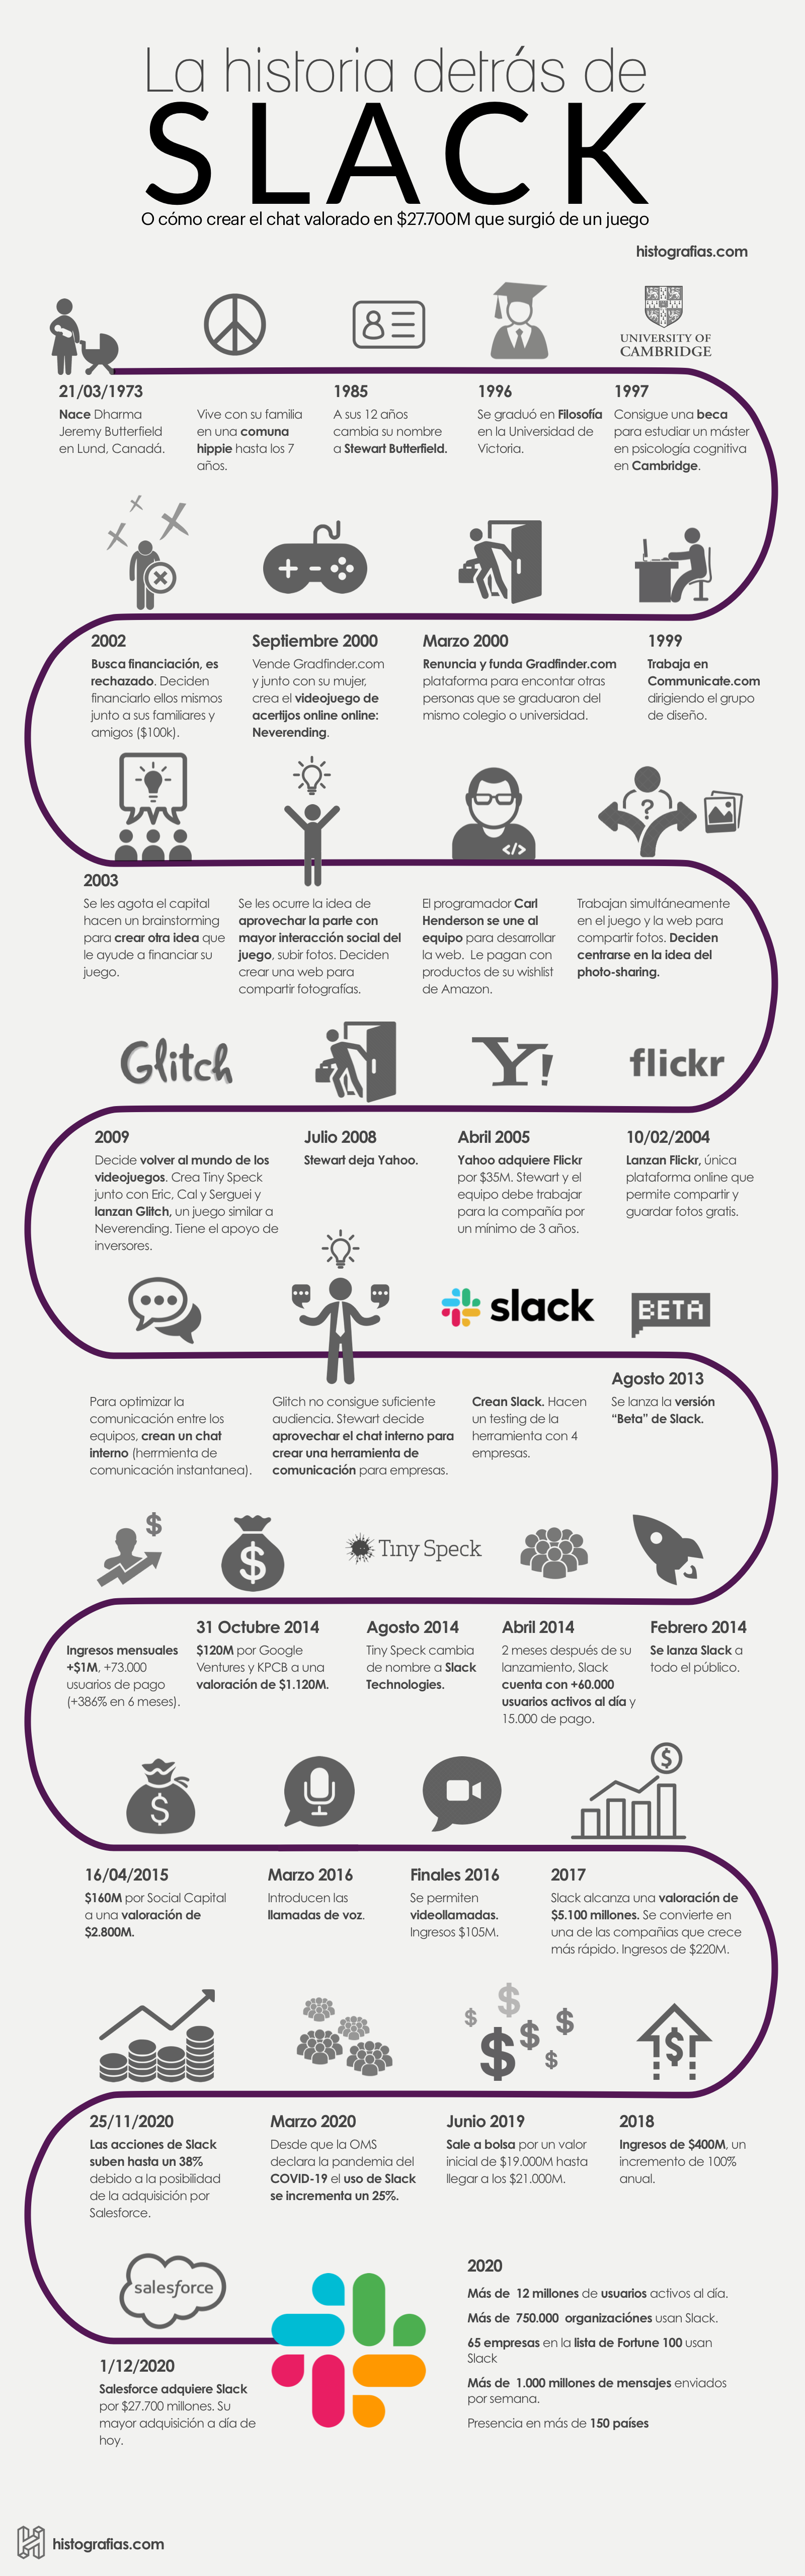 Infografía que cuenta la historia de Slack y su fundador Stewart Butterfield, desde su nacimiento hasta el año 2020, año en el que se vende Slack a Salesforce por $27.000 millones, la mayor compra de Salesforce a día de hoy.